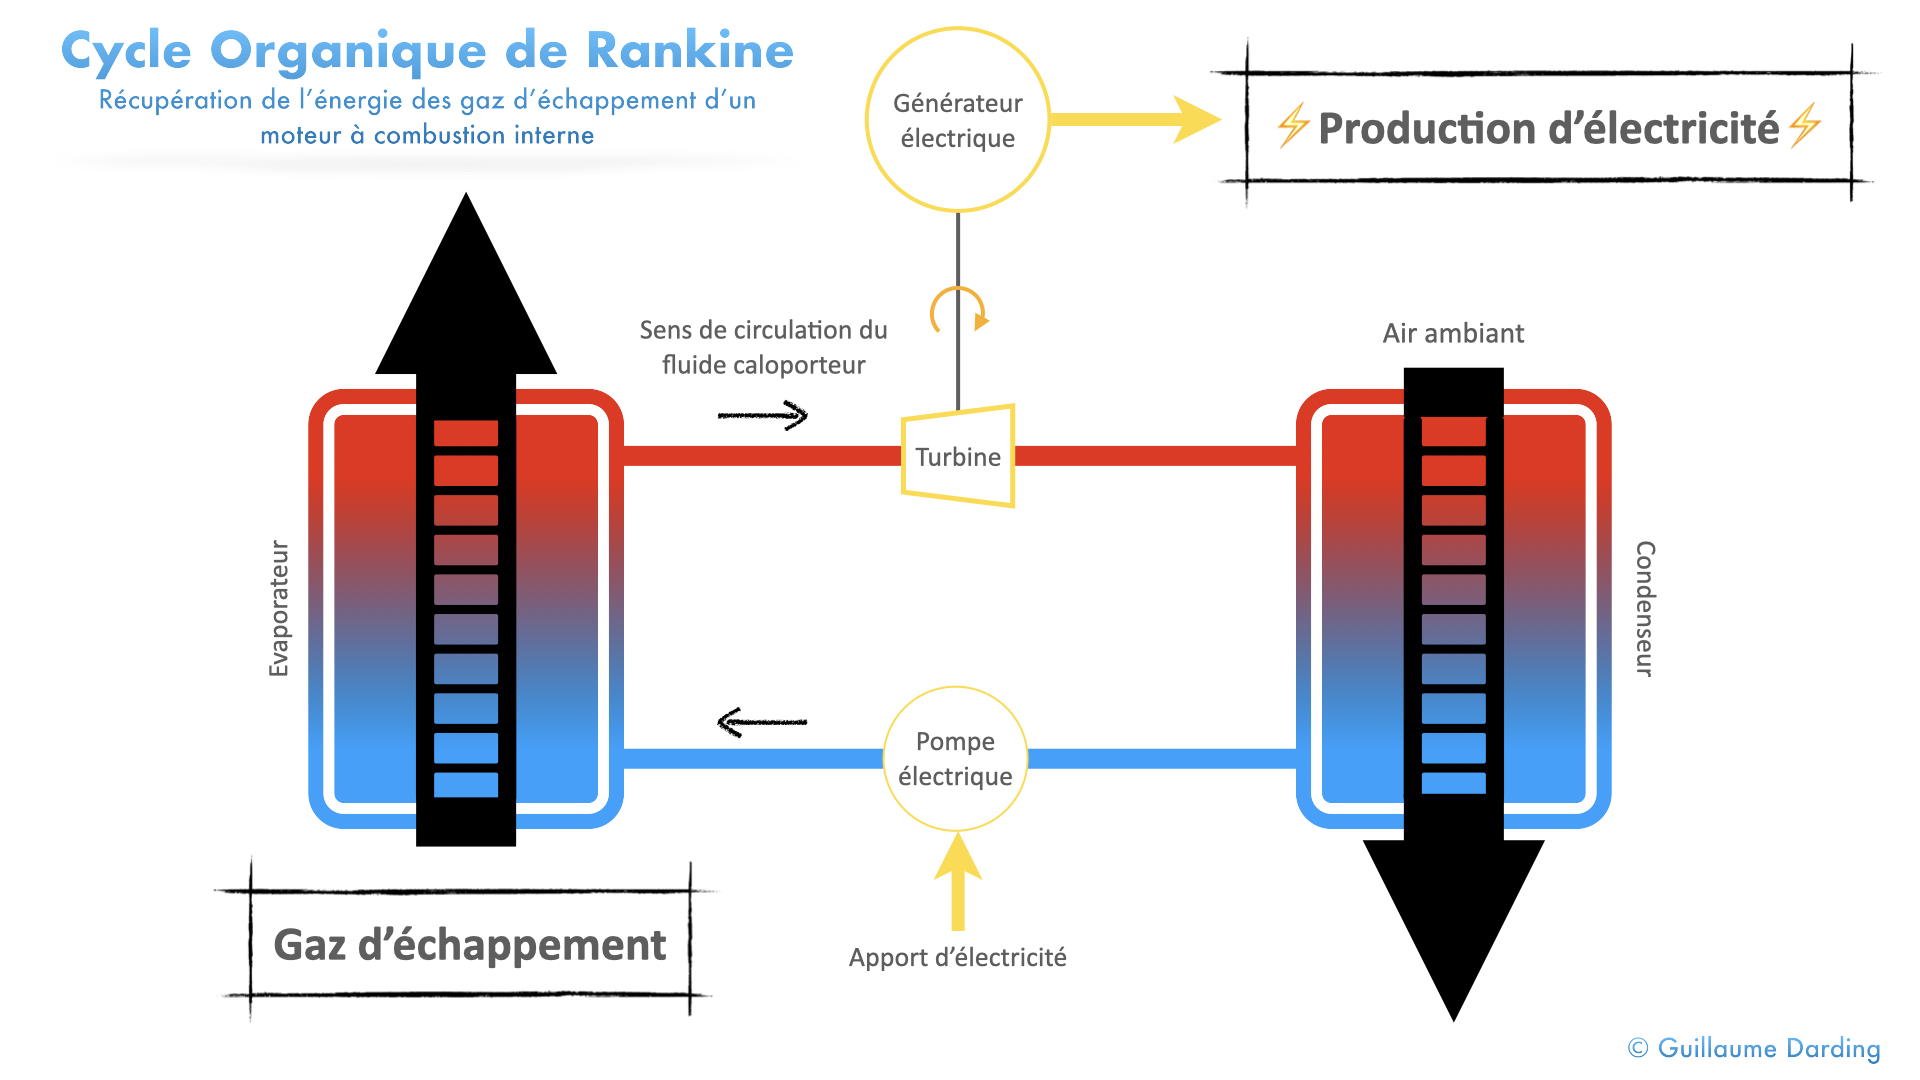 Description du cycle organique de Rankine ORC